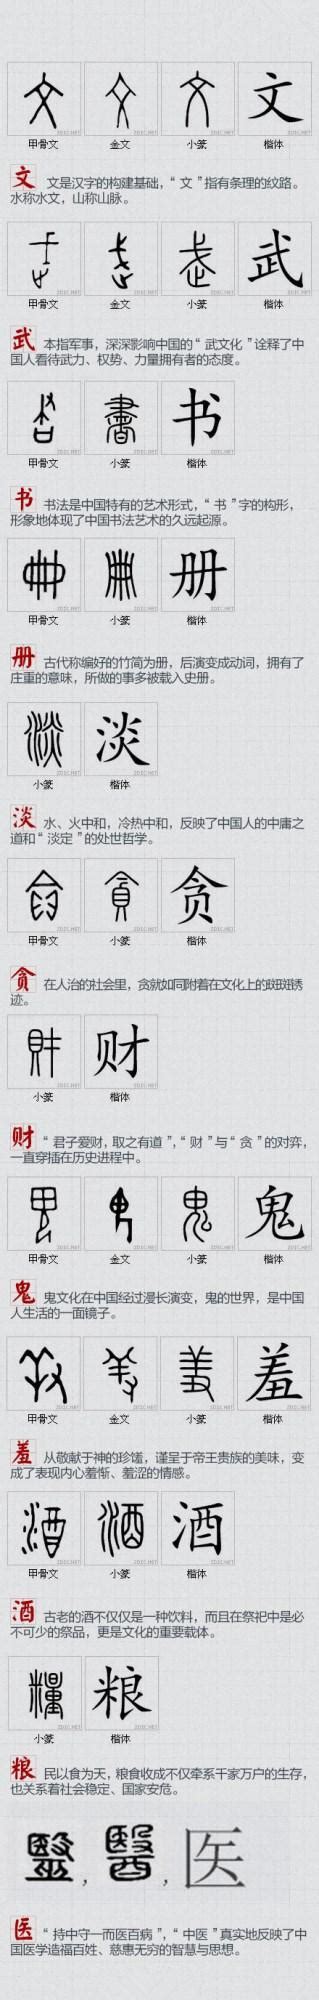 汉字演变过程主要经历了七个阶段，哪七个阶段